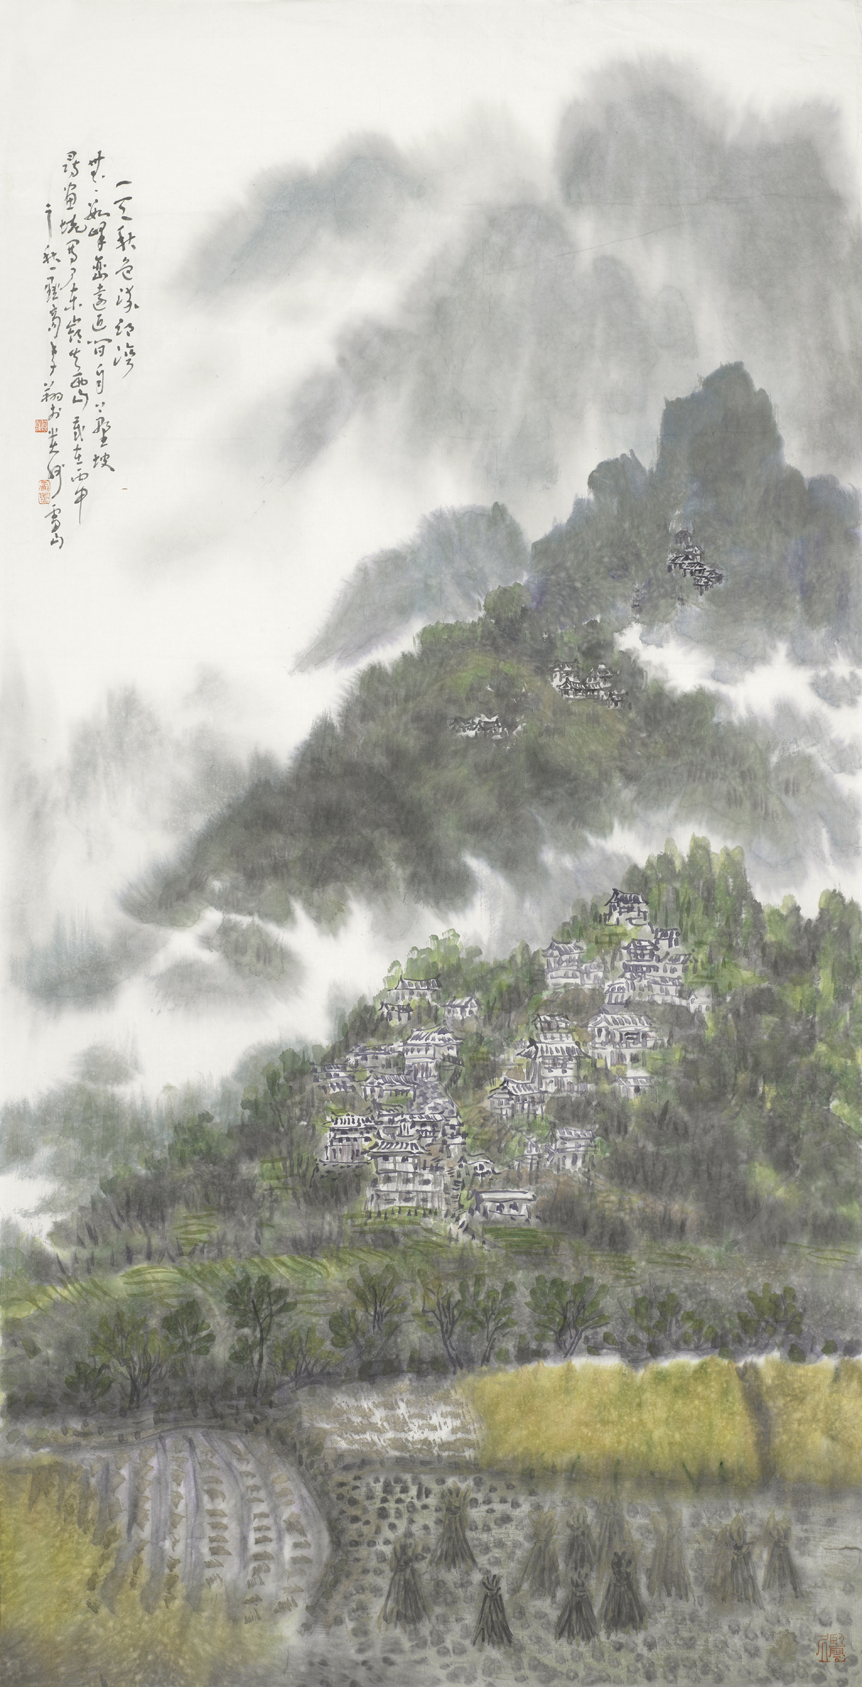 一天秋色流乡湾，无数峰峦远近间，自上野坡寻画境，写了东岭失西山